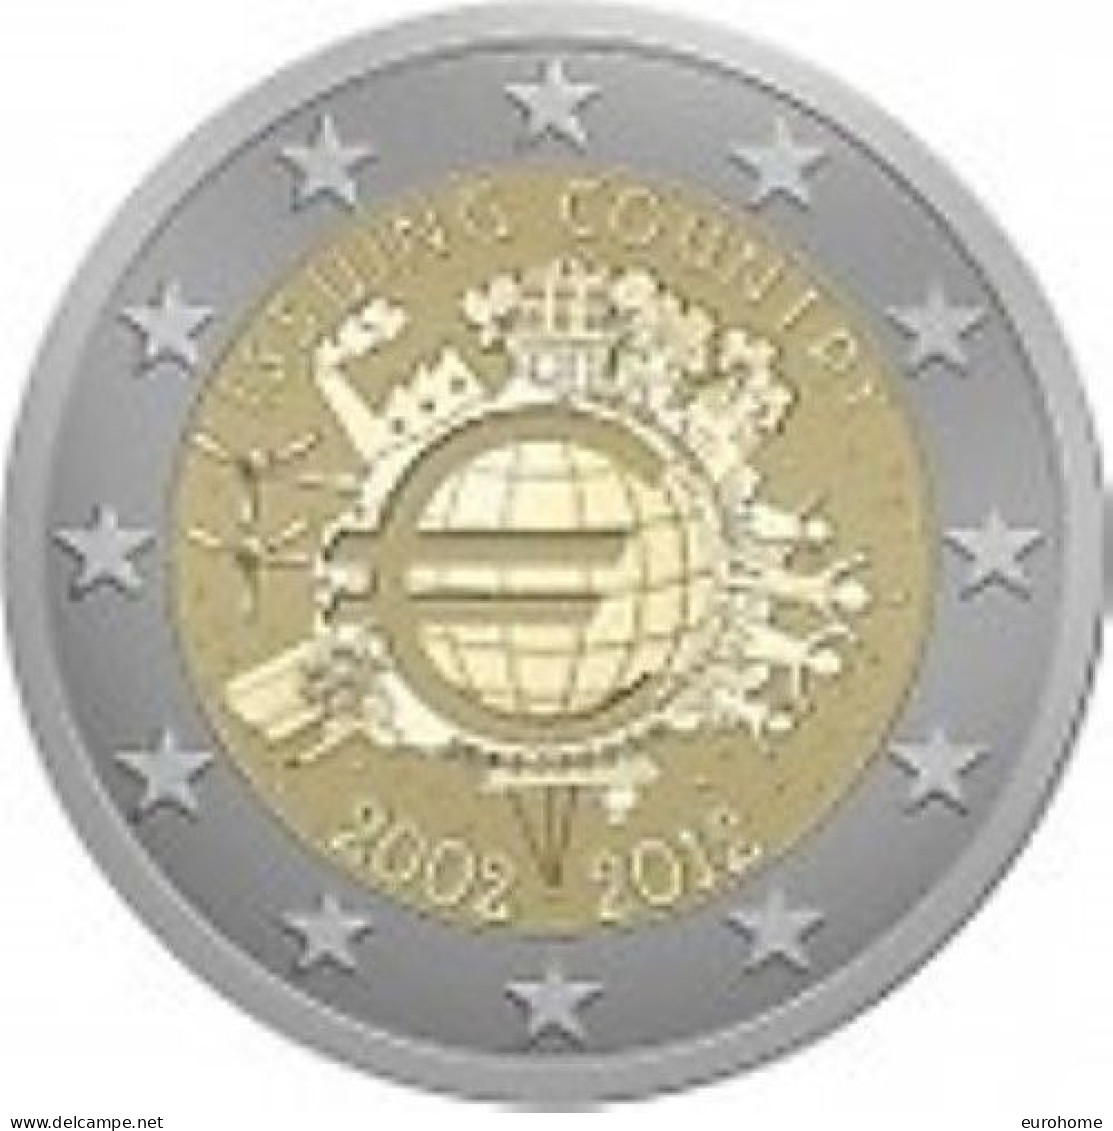 Ierland 2012    2 Euro Commemo   10 Jaar Euro      UNC Uit De Rol  UNC Du Rouleaux  !! - Eslovenia